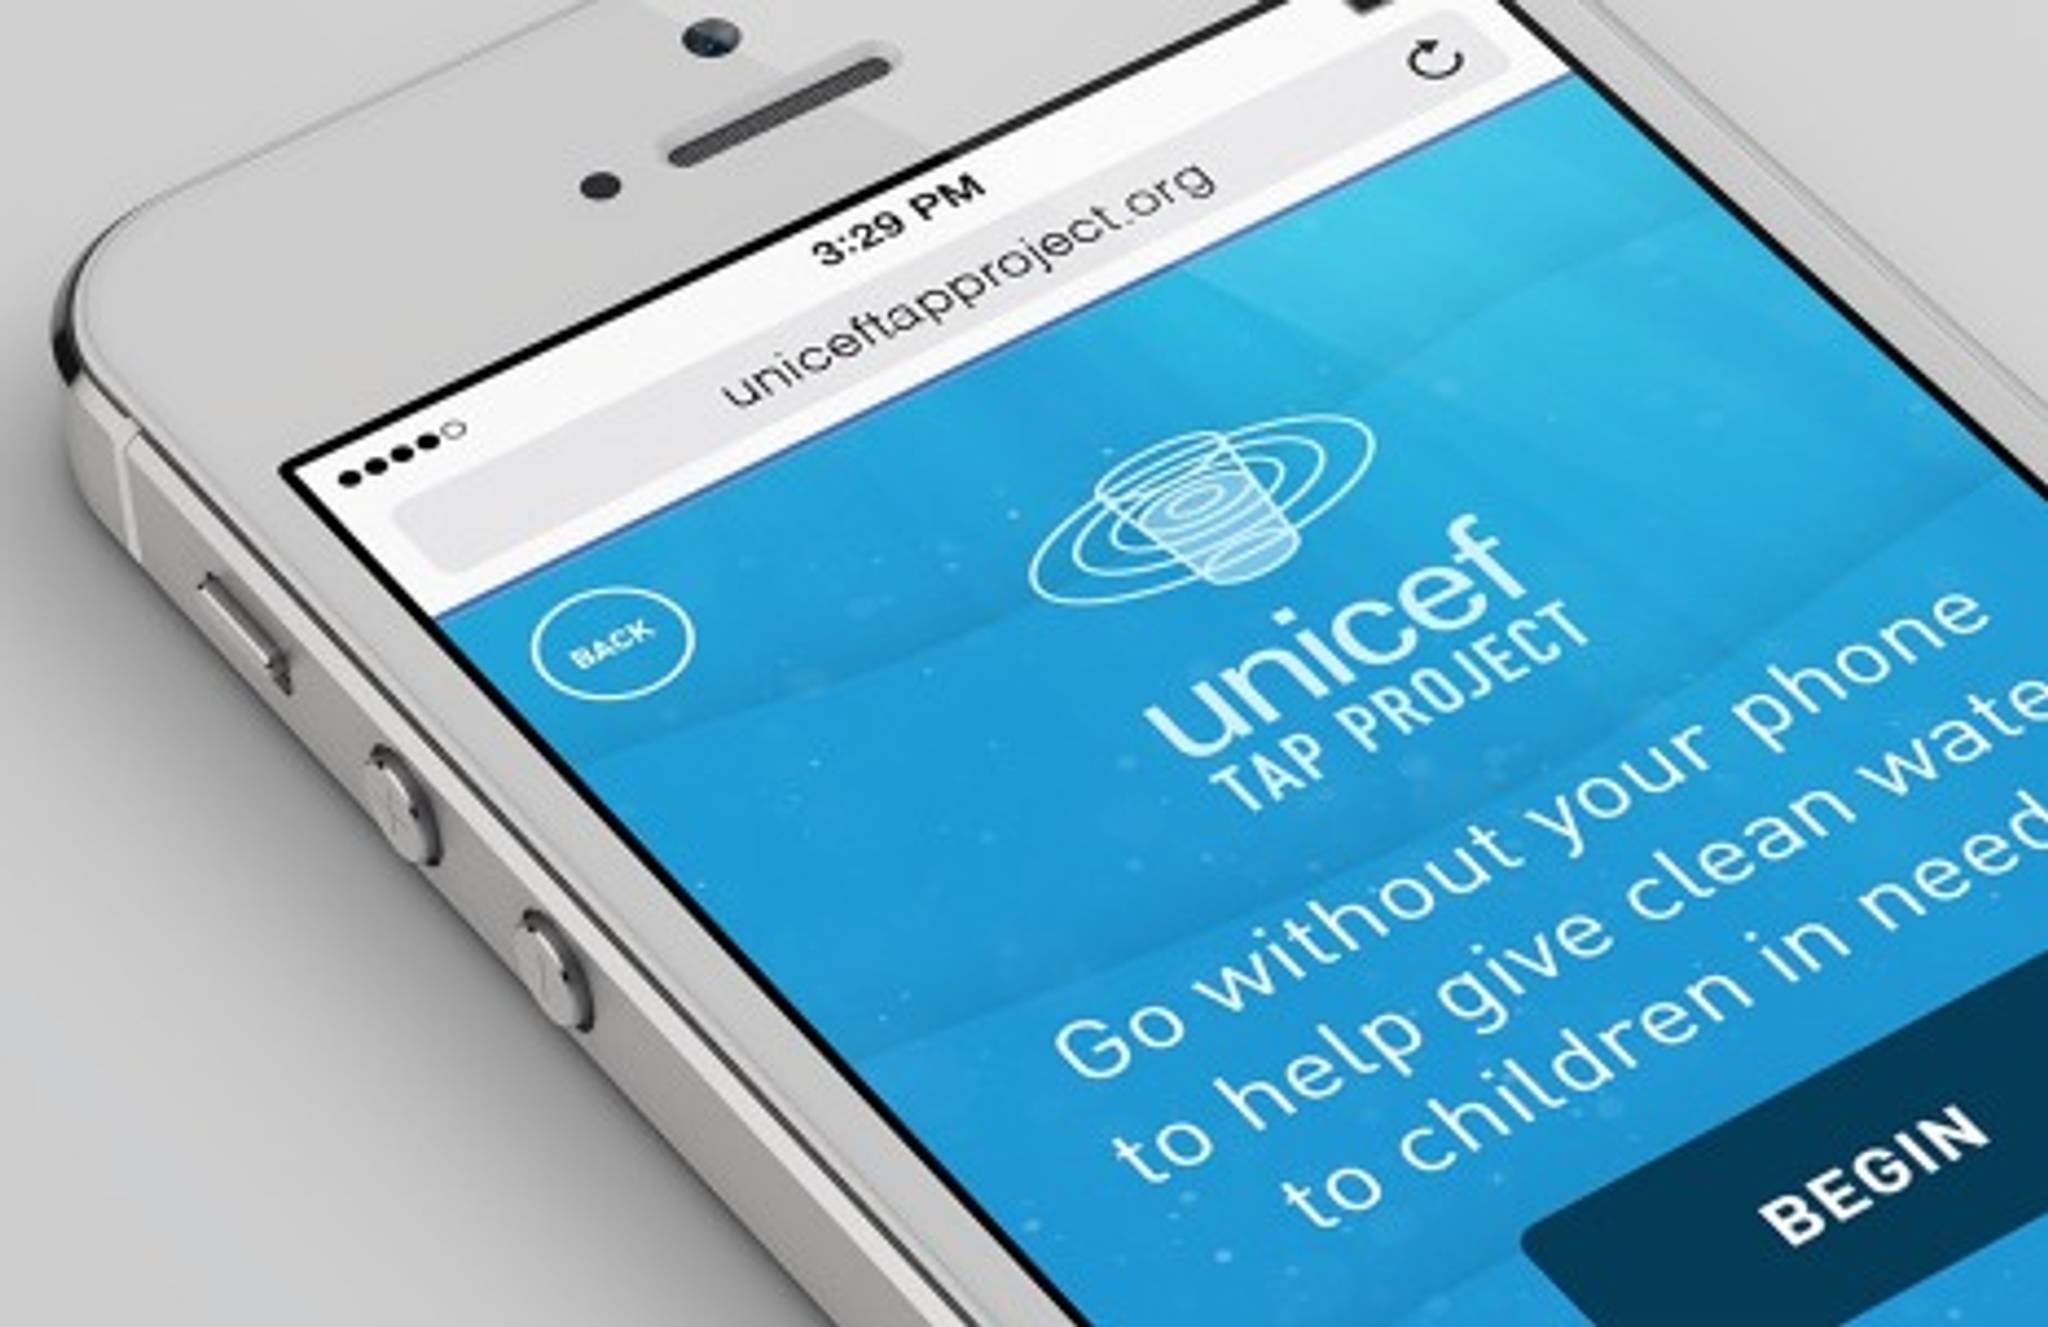 Unicef challenges Millennials